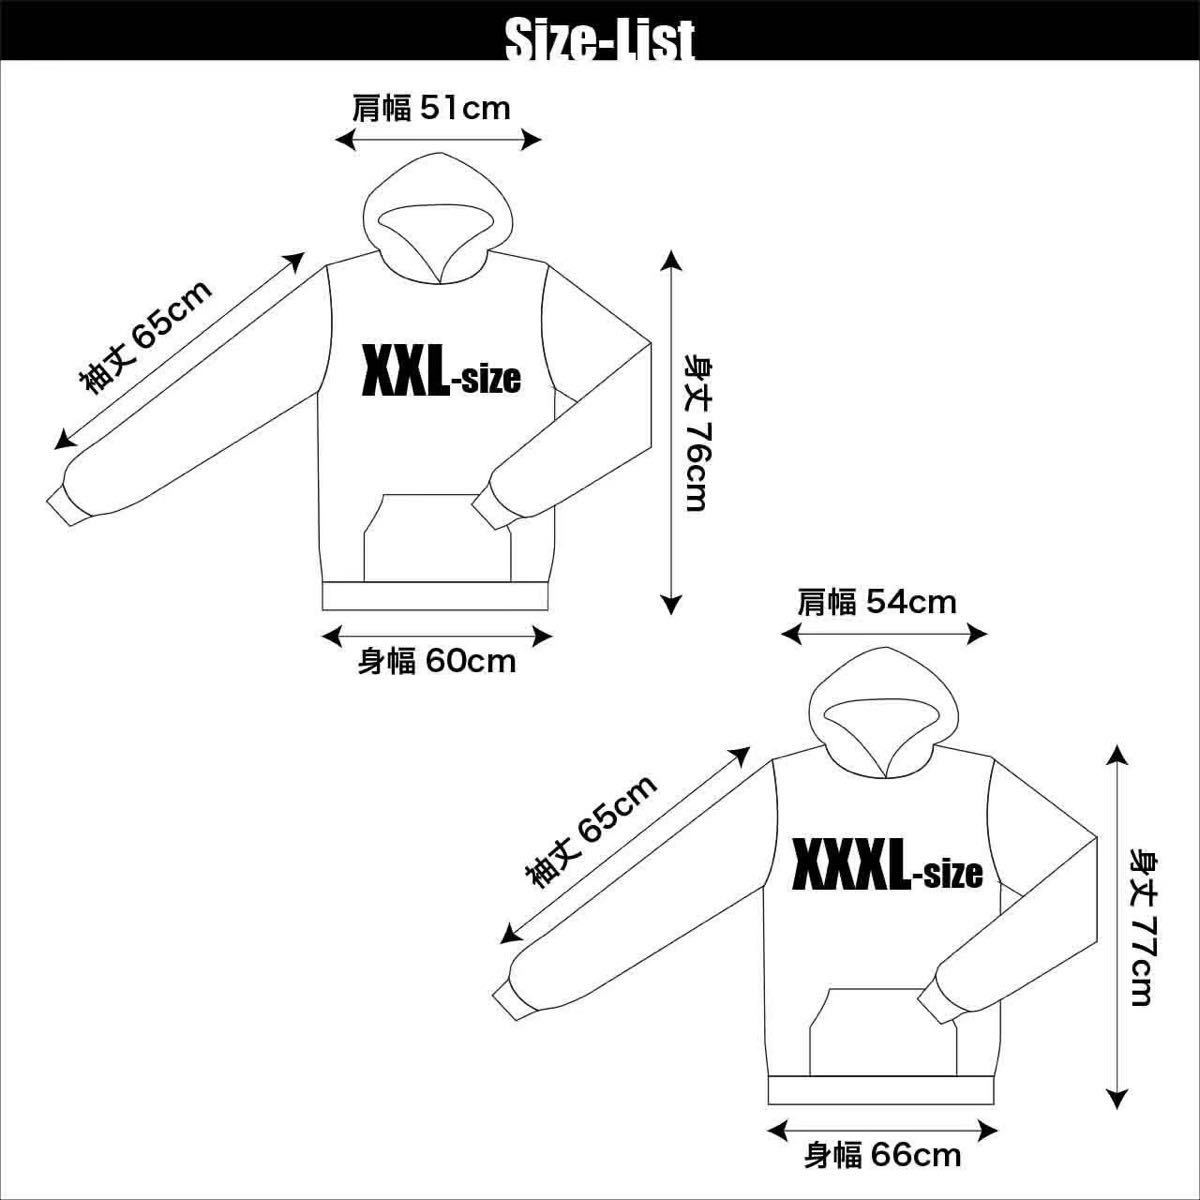 新品 LINKIN PARK リンキン パーク ウィング 羽根 翼 バンド ロゴ Tシャツ S M L XL ビッグ オーバー サイズ XXL~5XL ロンT パーカー 対応_画像9